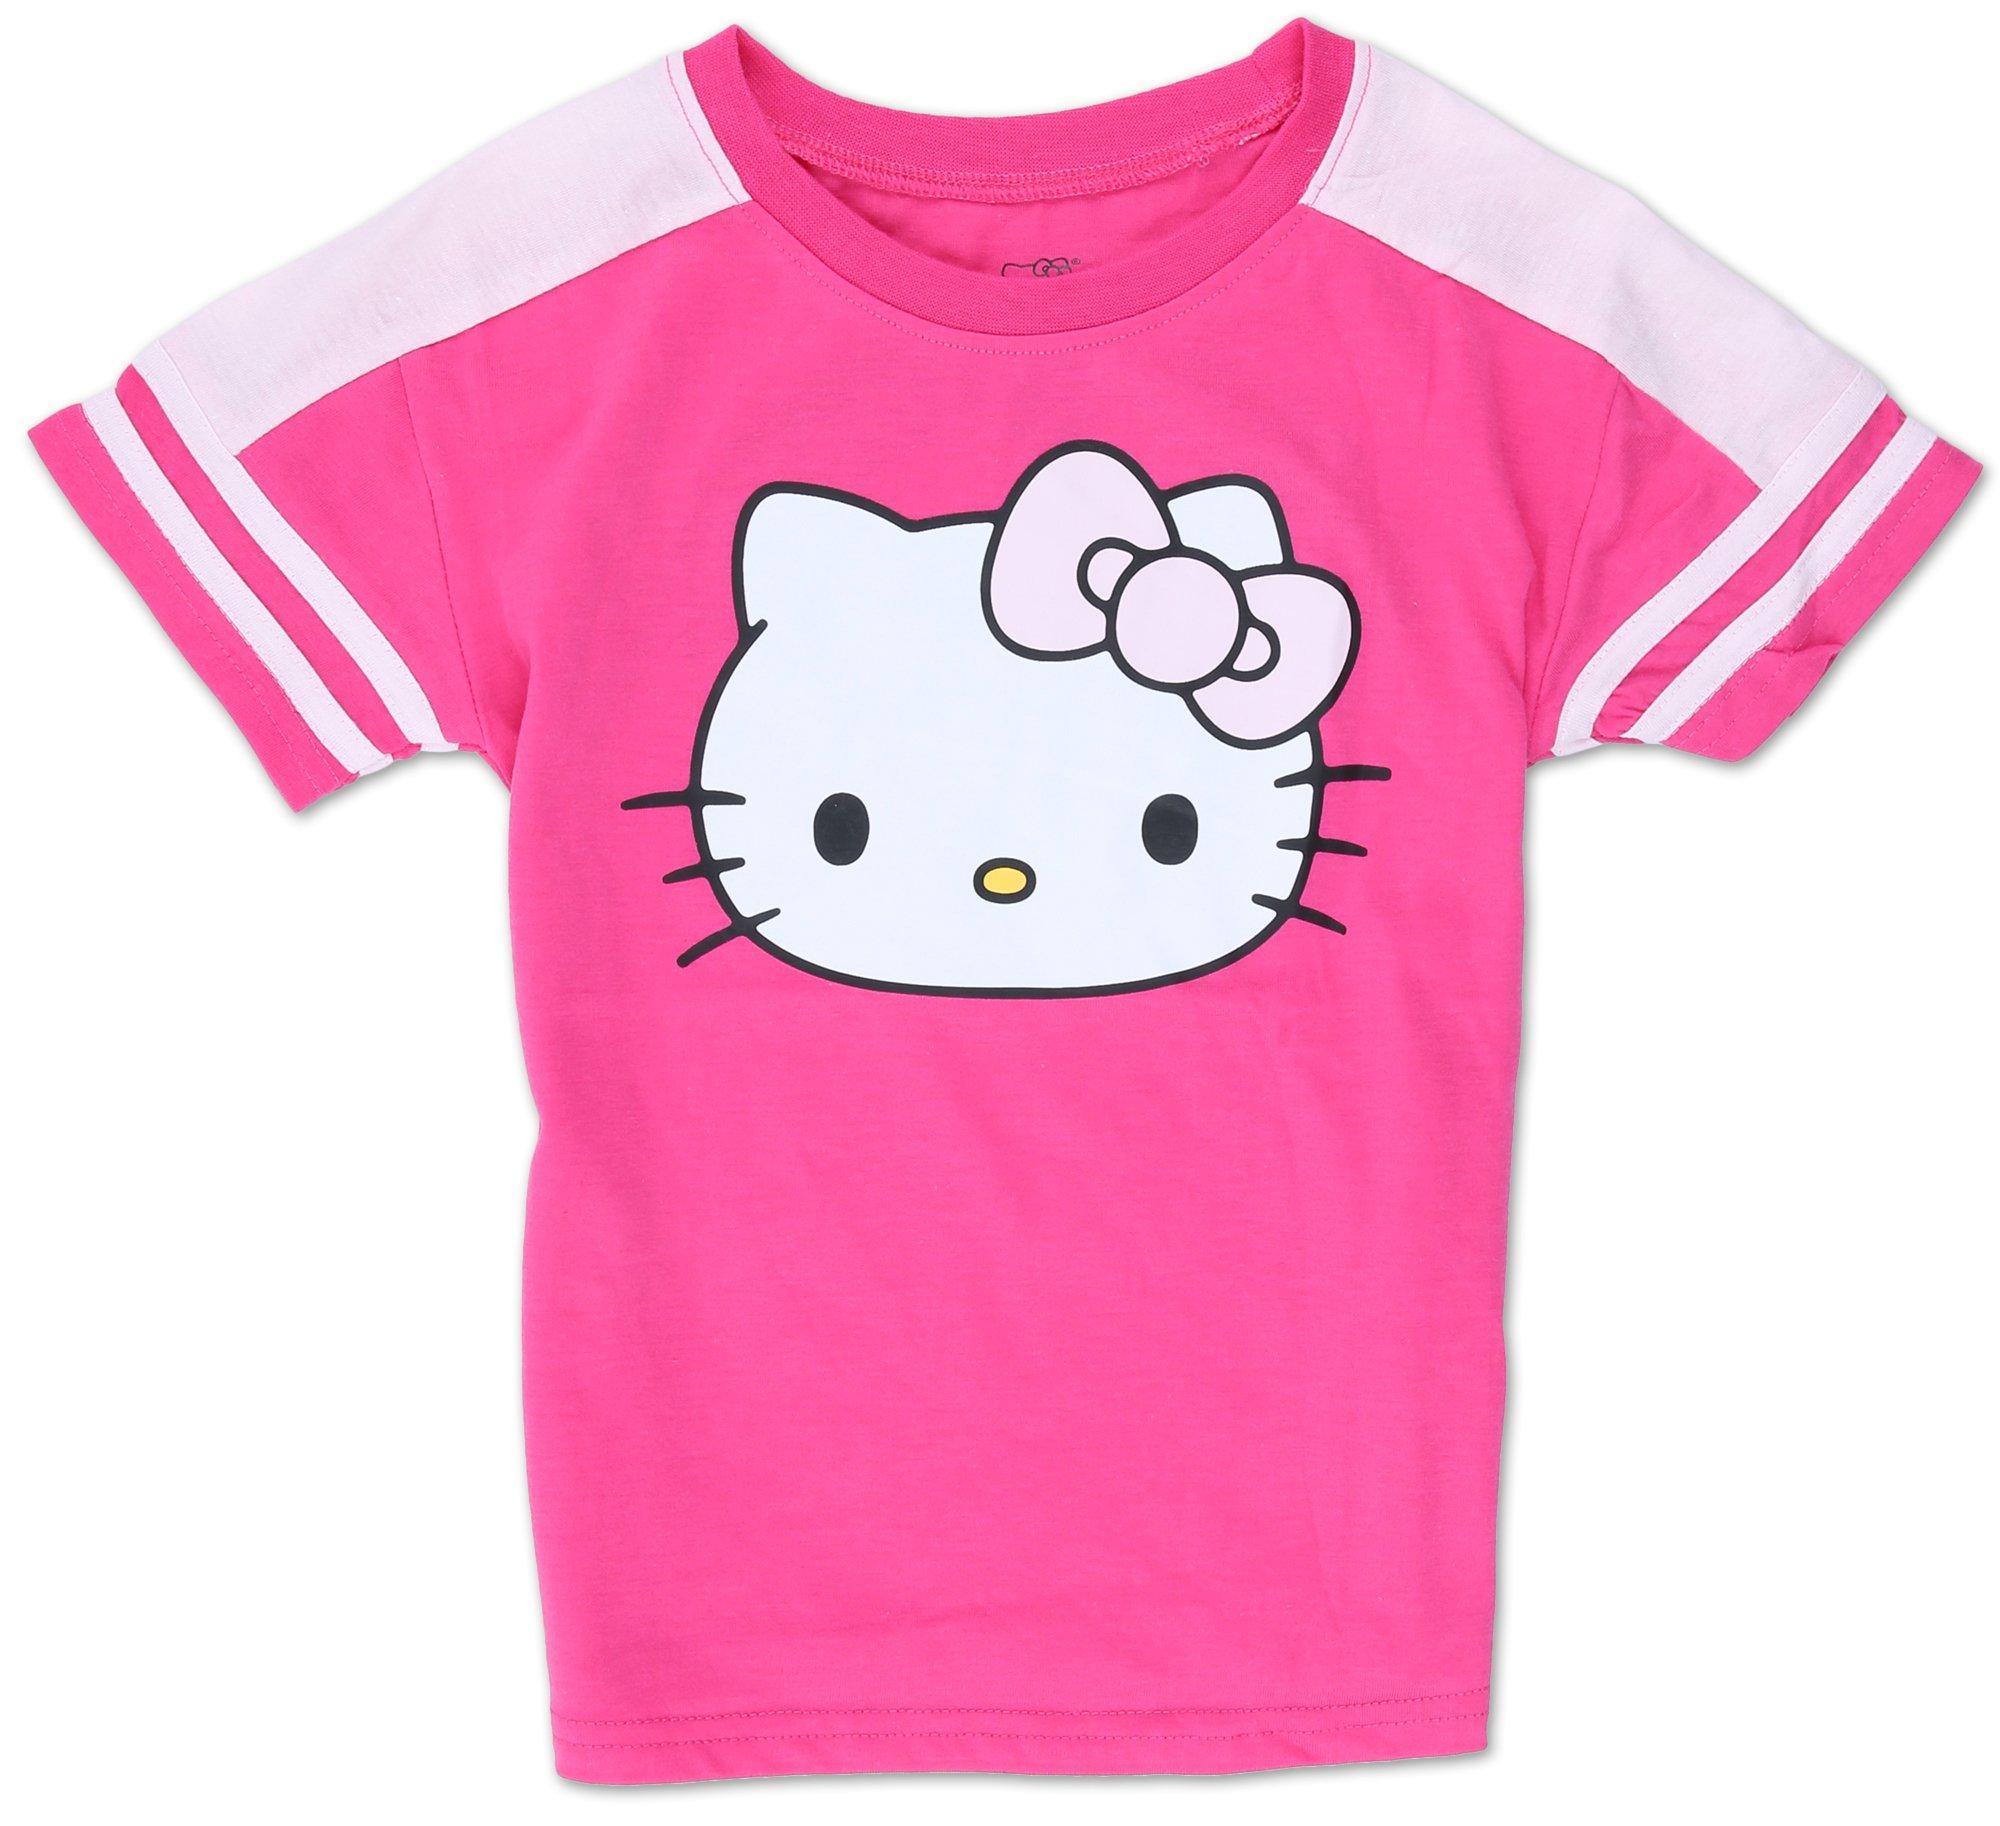 Girls Hello Kitty Short Sleeve Top